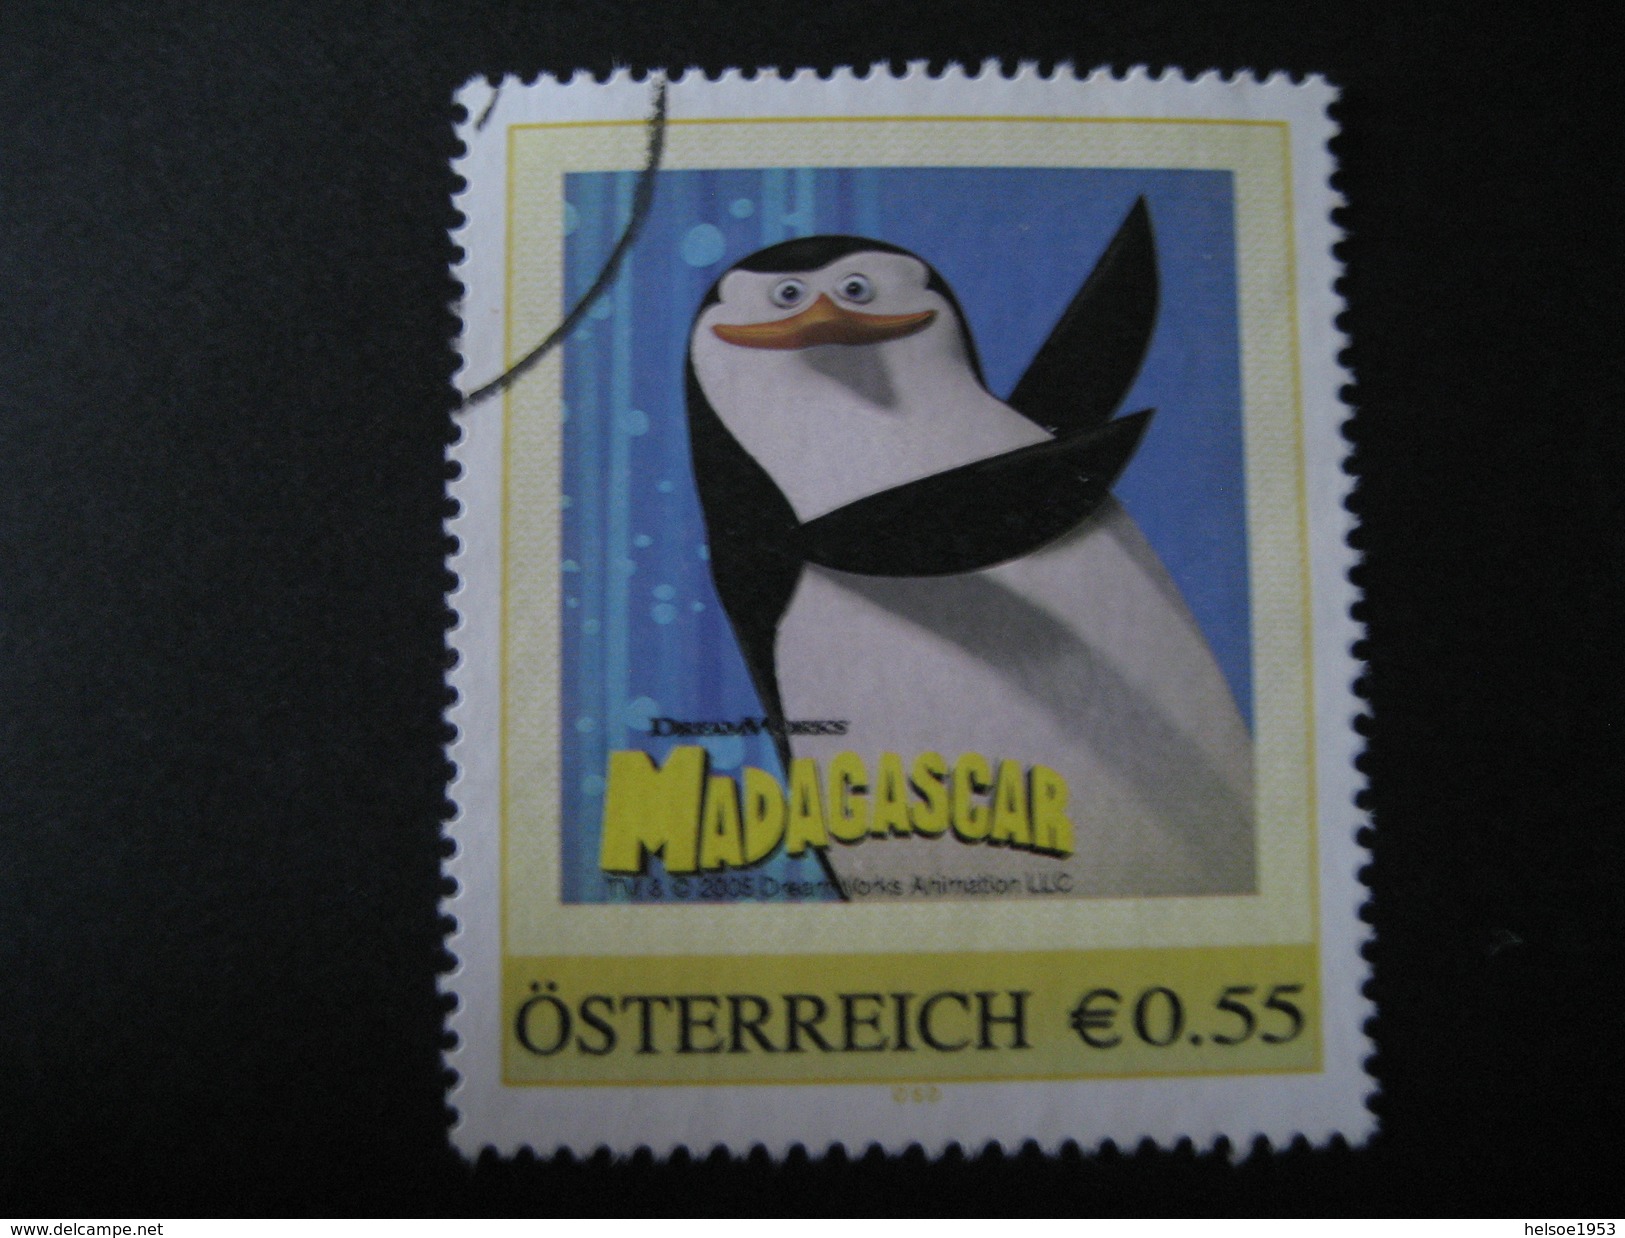 Österreich- Pers.BM- Aus Markenheft "Madagascar" Gebraucht - Personalisierte Briefmarken